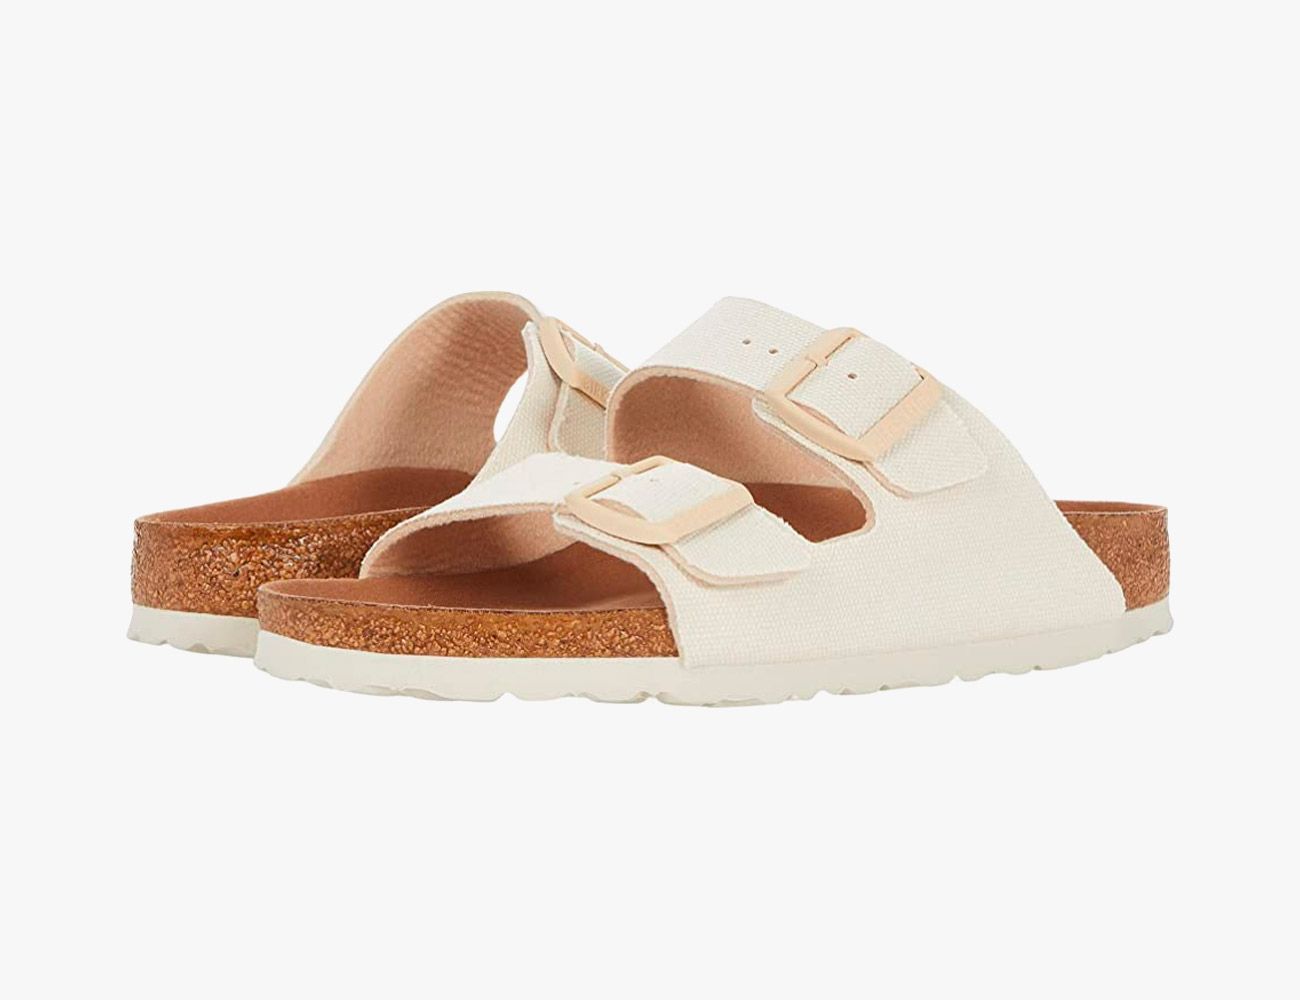 White & Brown Birkenstock Sandals - Dripside Customs UK